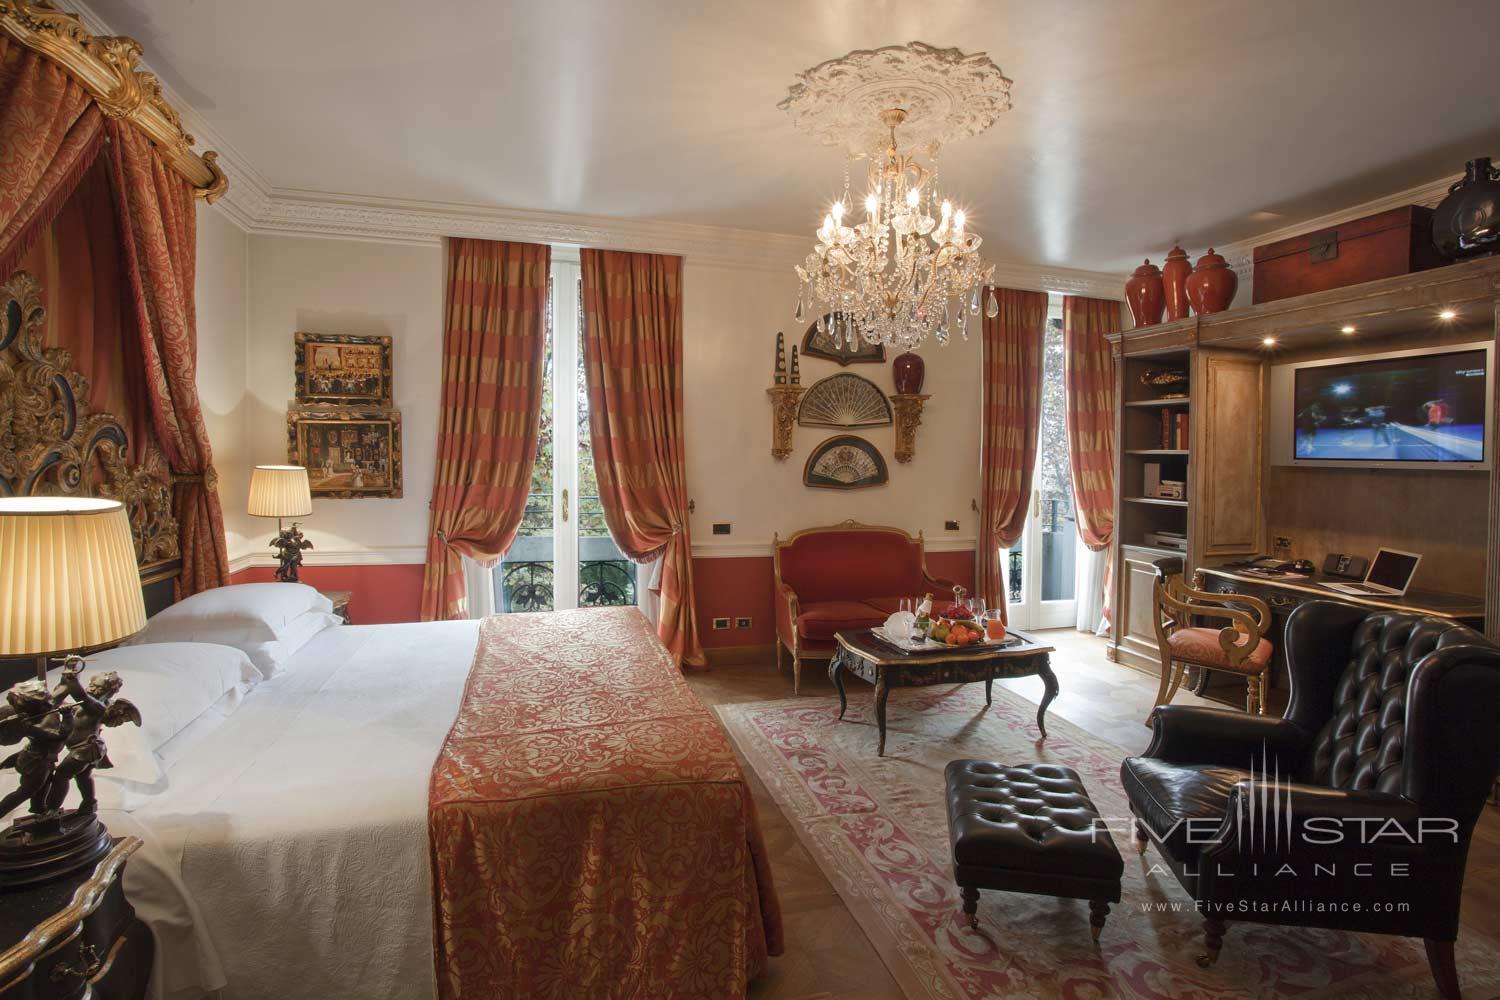 Guest Room at Hotel de la Ville, Monza, Italy